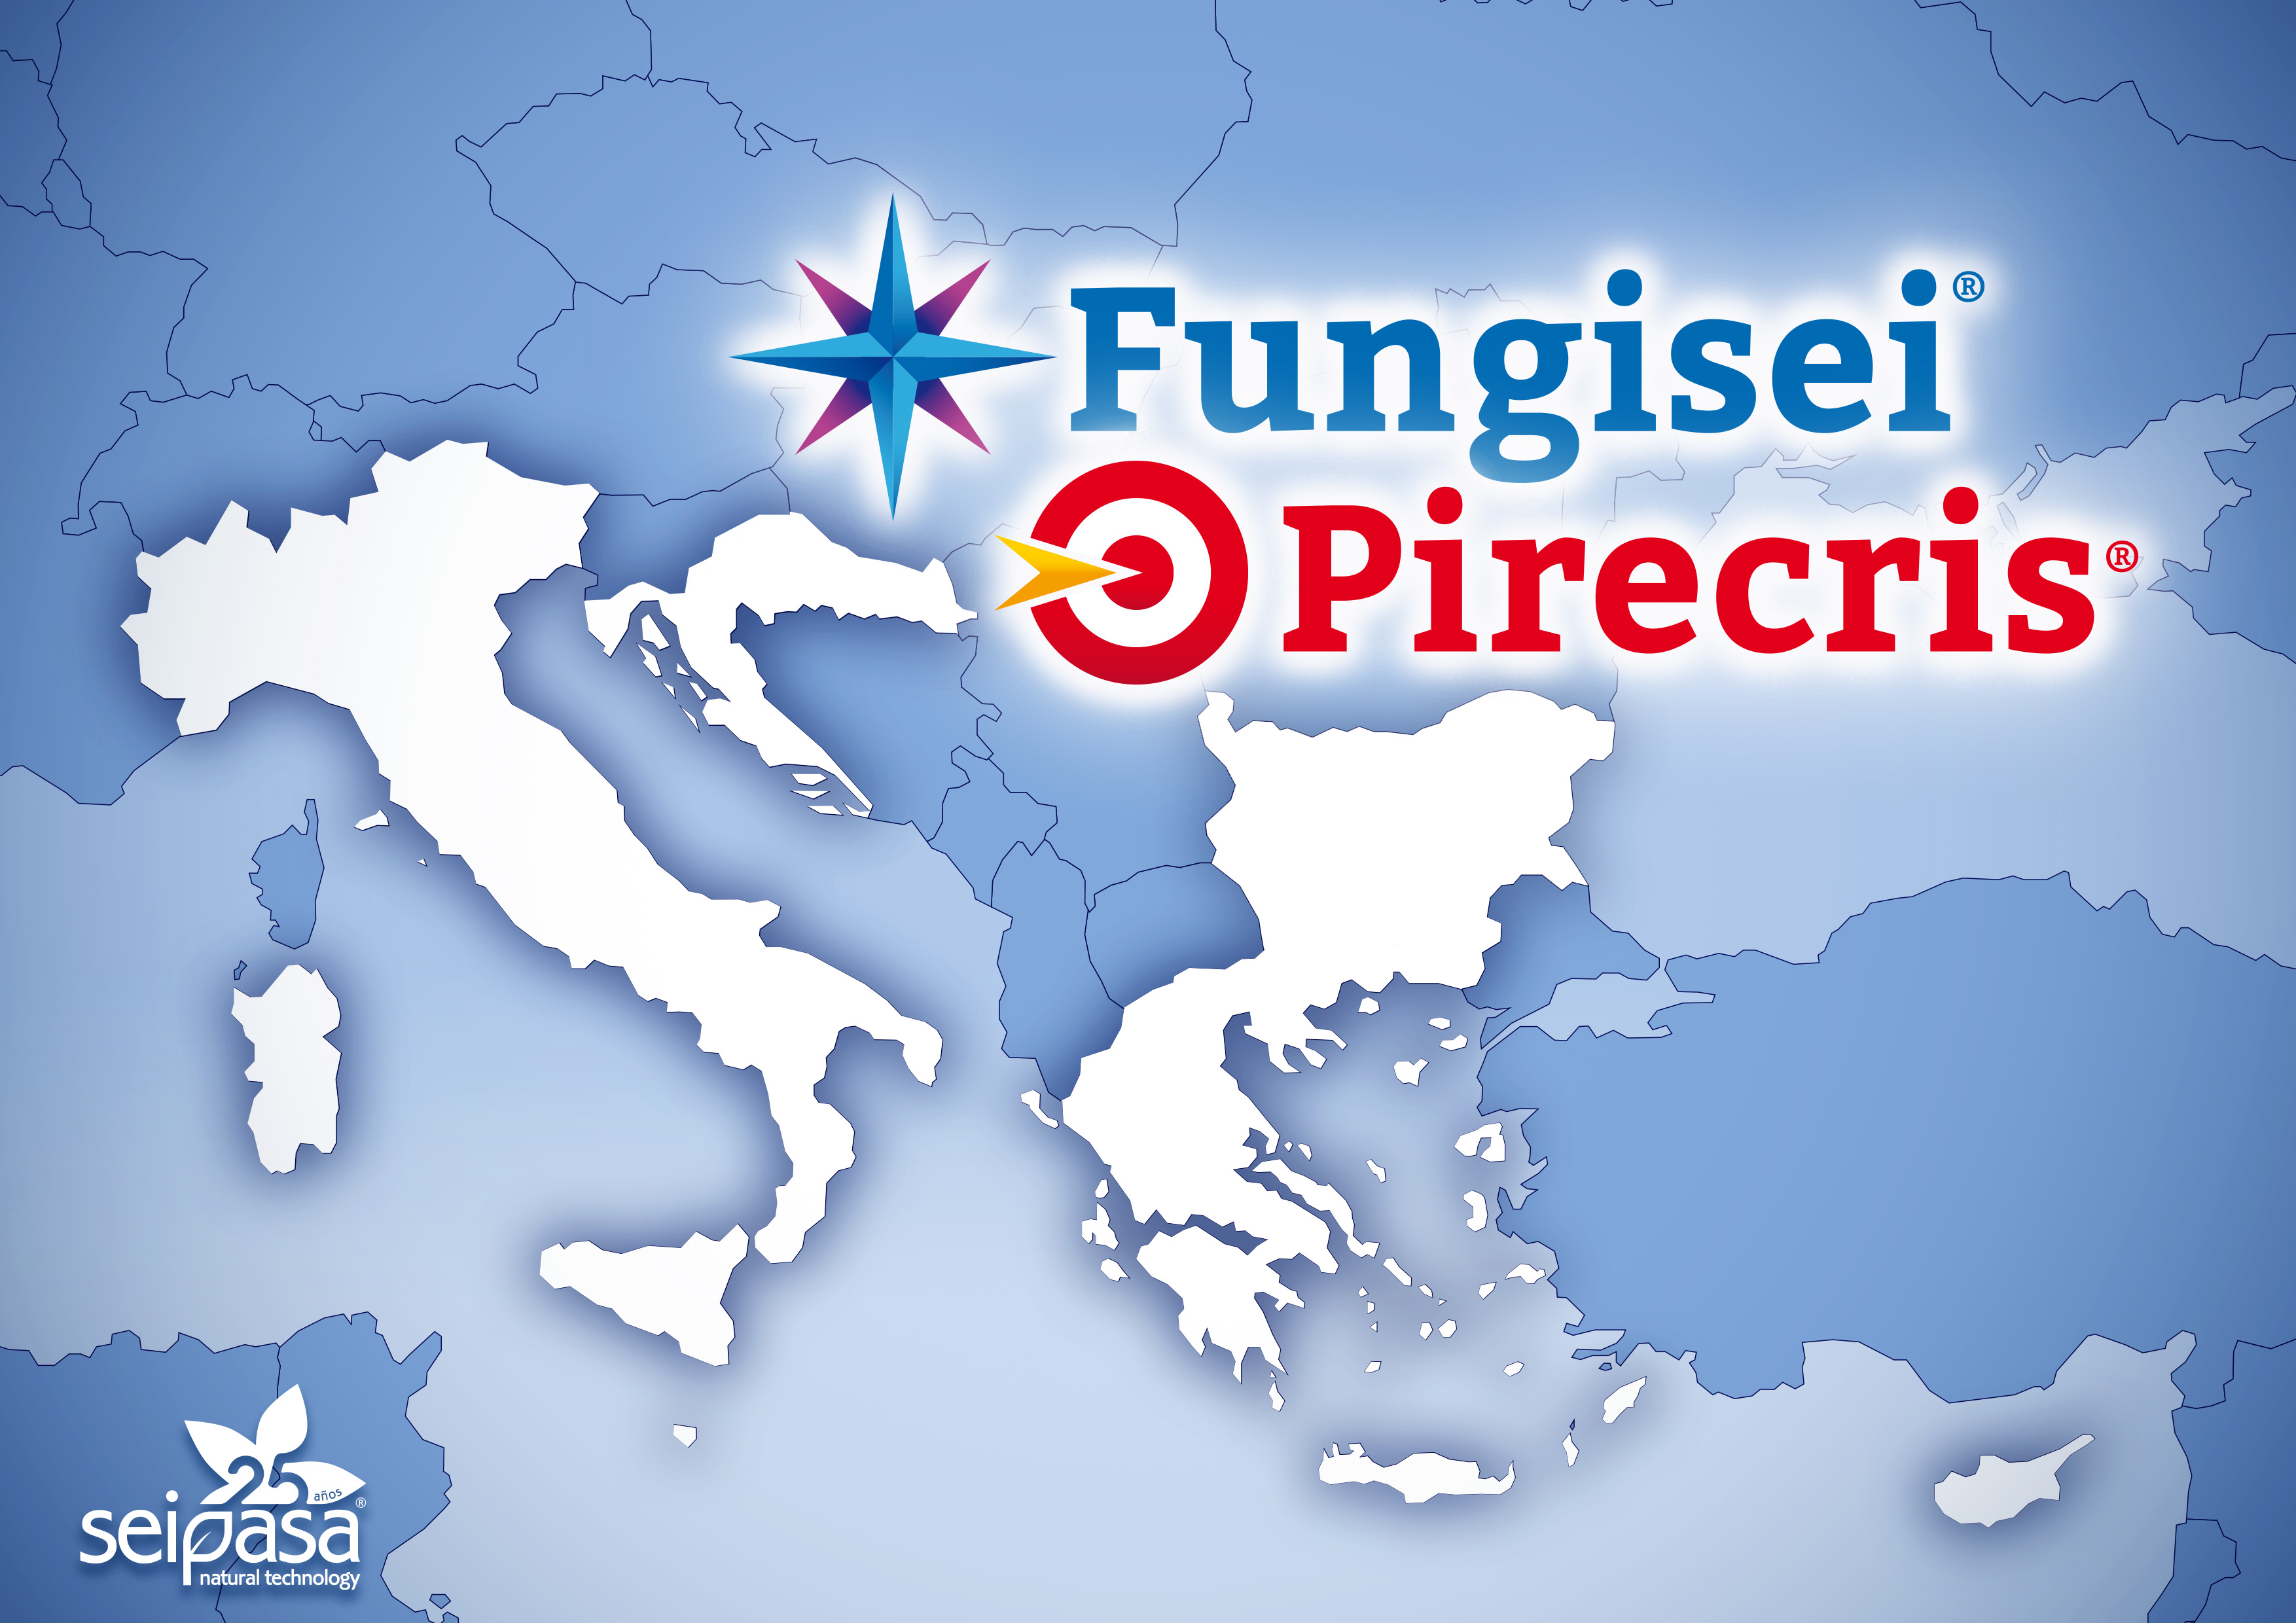 Fungisei Pirecris Europa Prensa